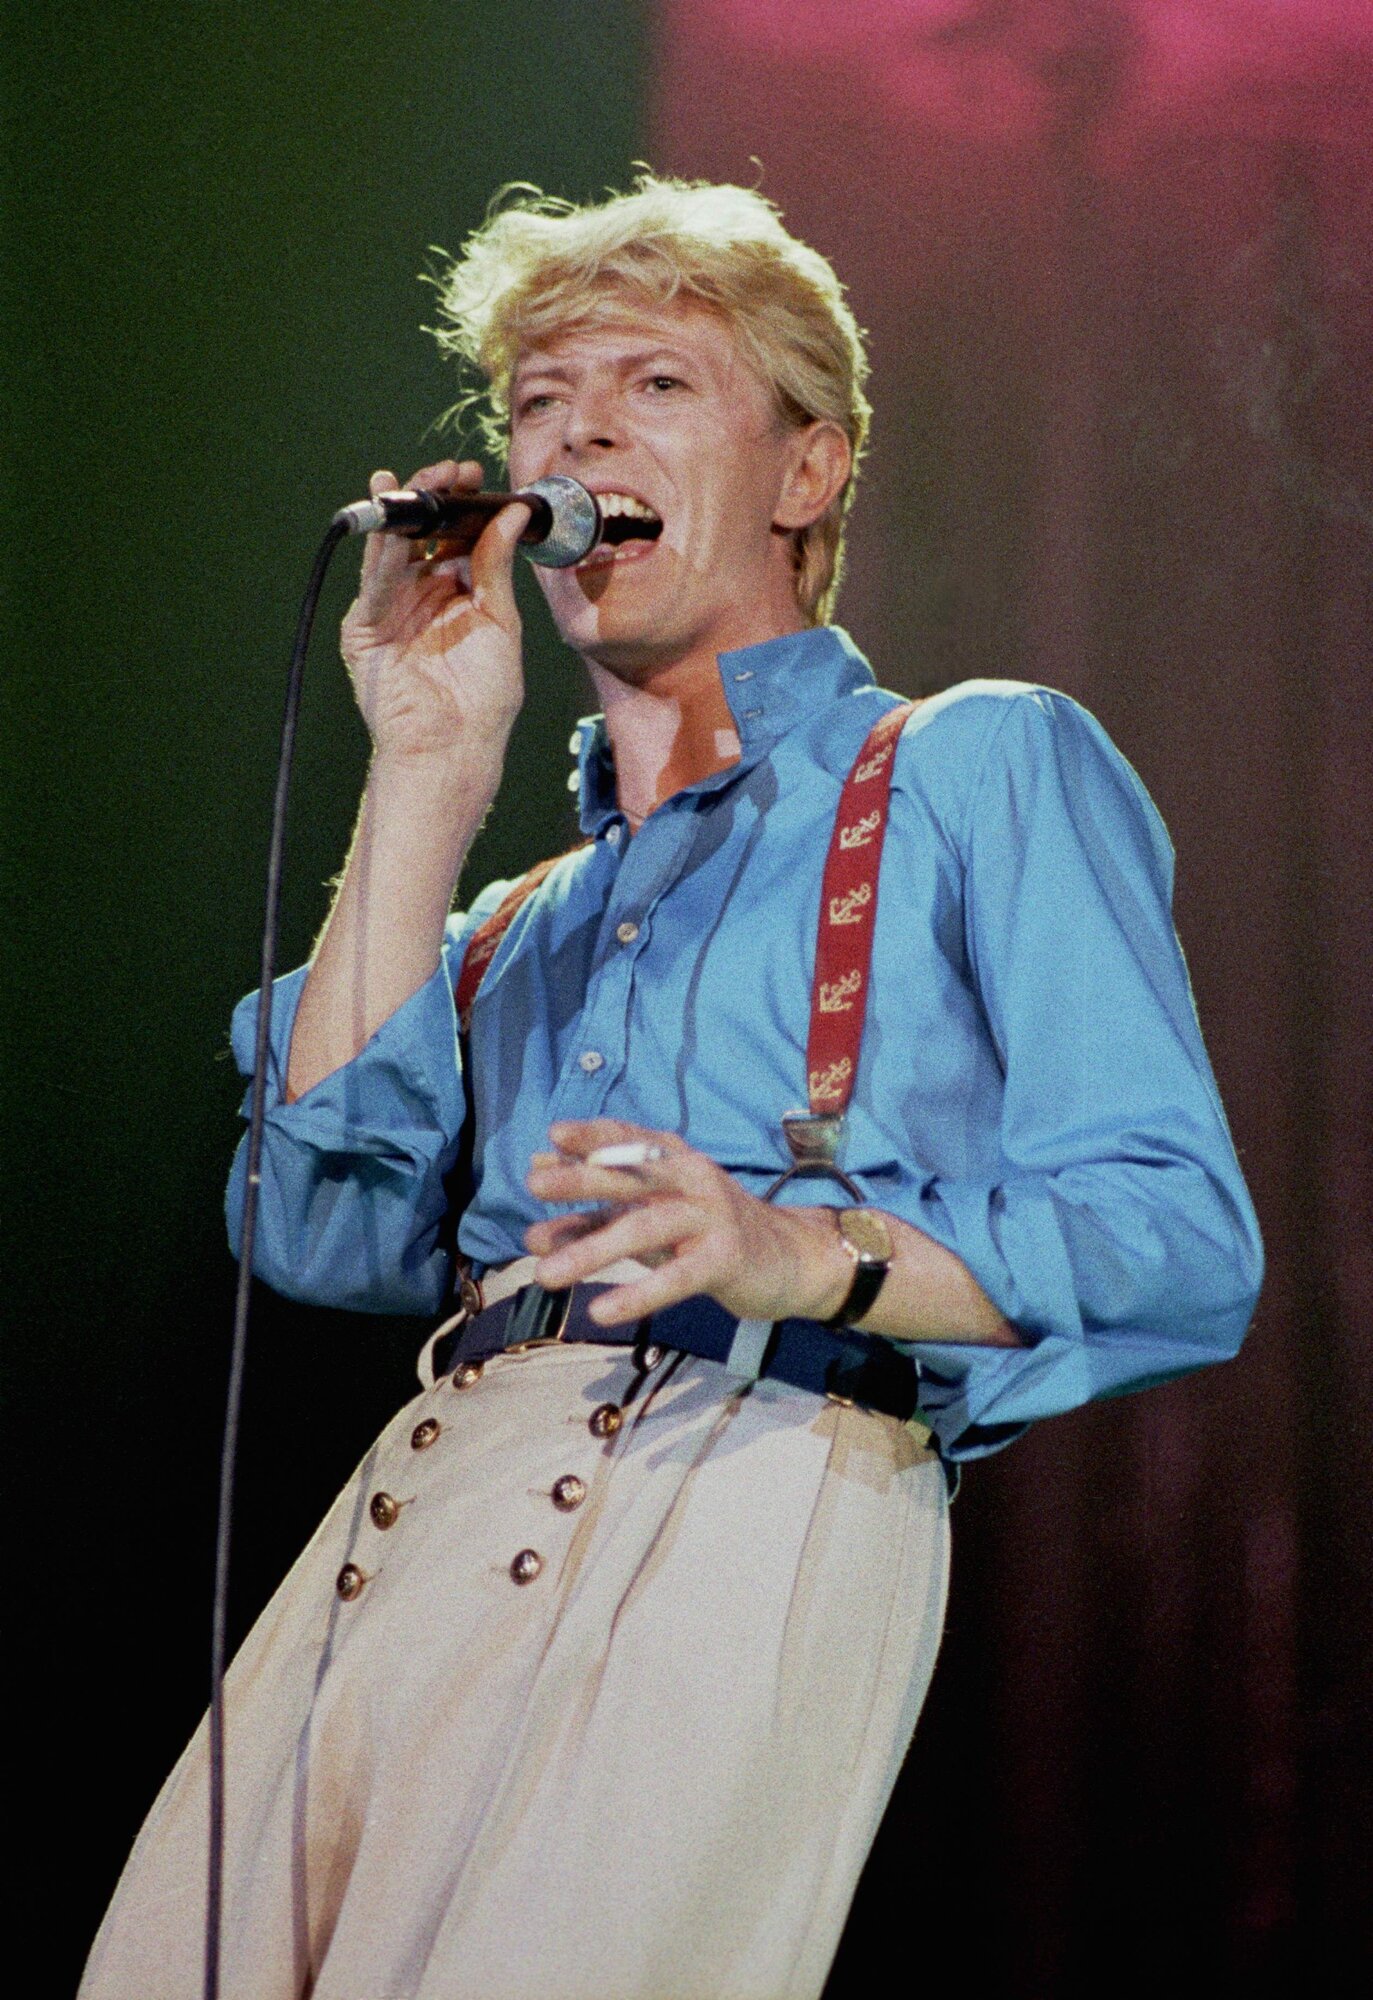 David Bowie élőben a színpadon a Serious Moonlight turnén.